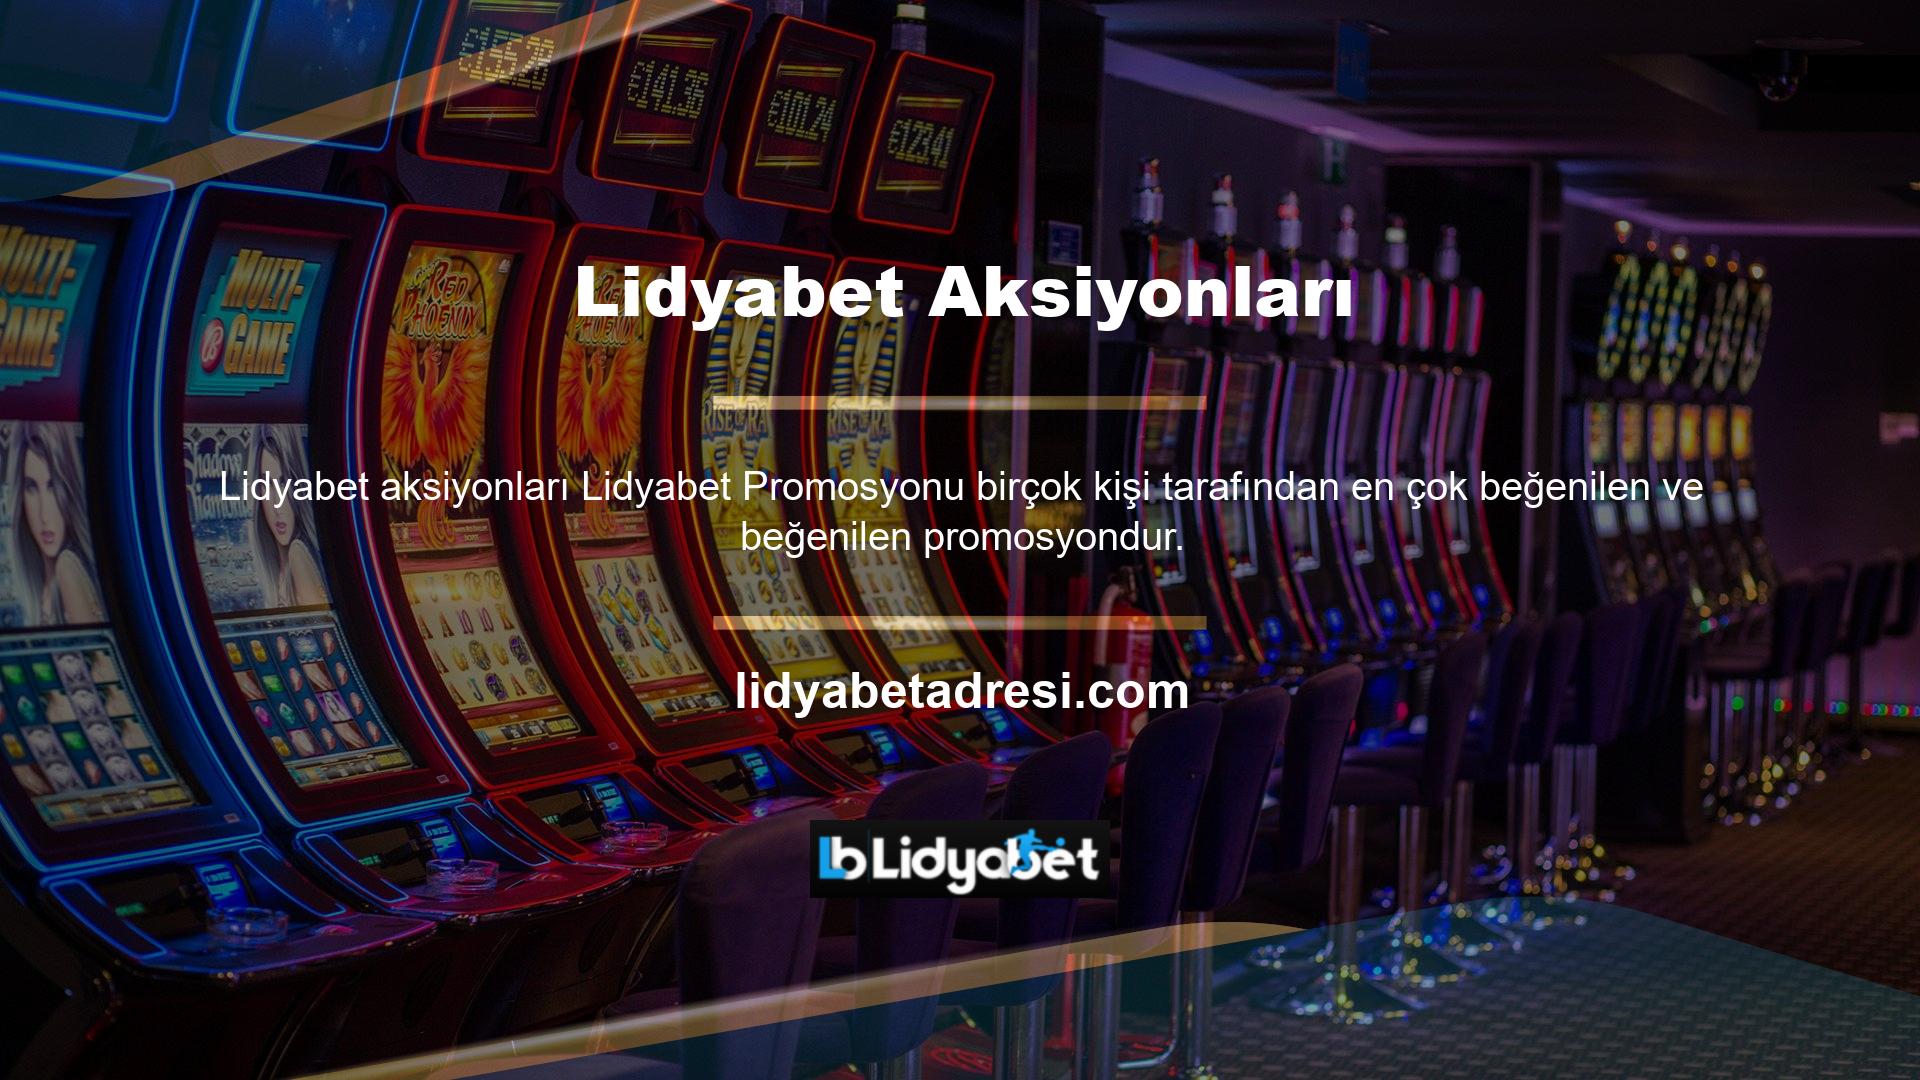 Hatta Lidyabet sitesi en çok reklamı yapılan sitedir